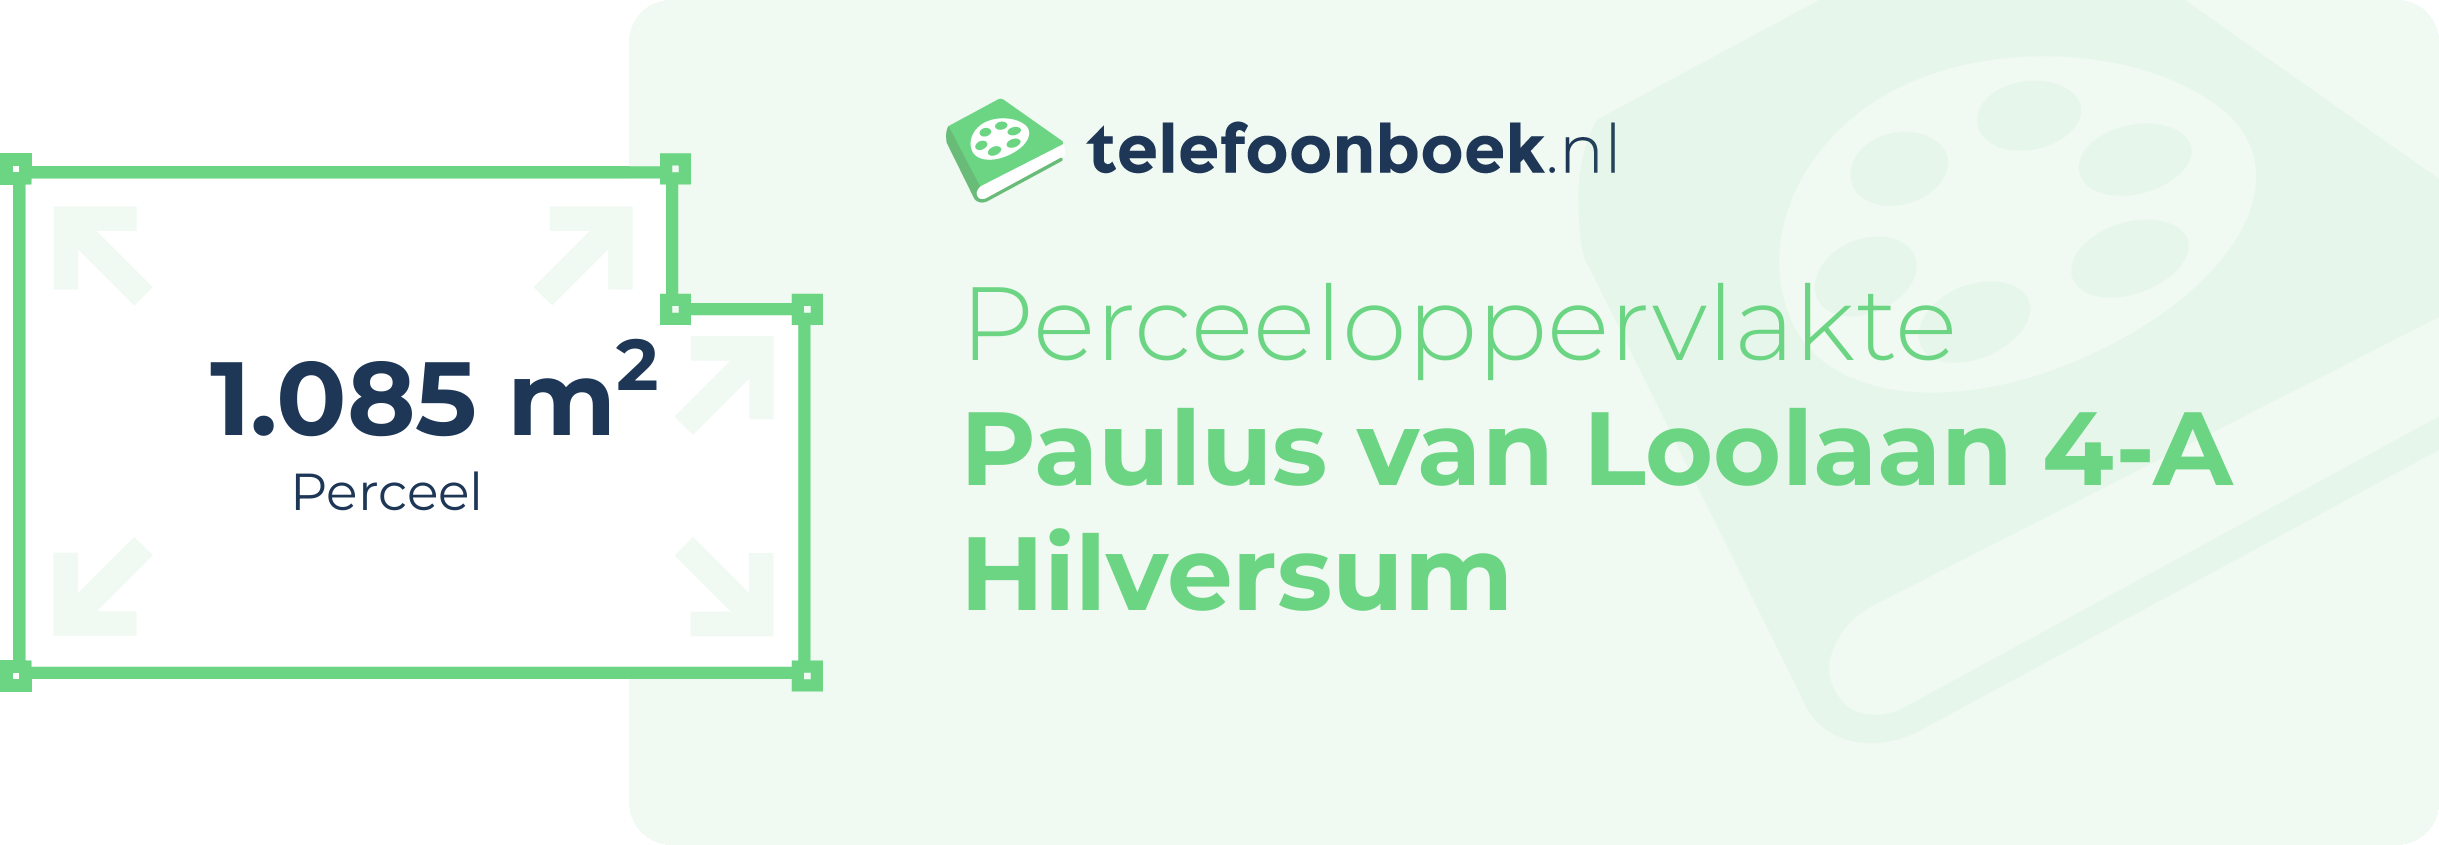 Perceeloppervlakte Paulus Van Loolaan 4-A Hilversum